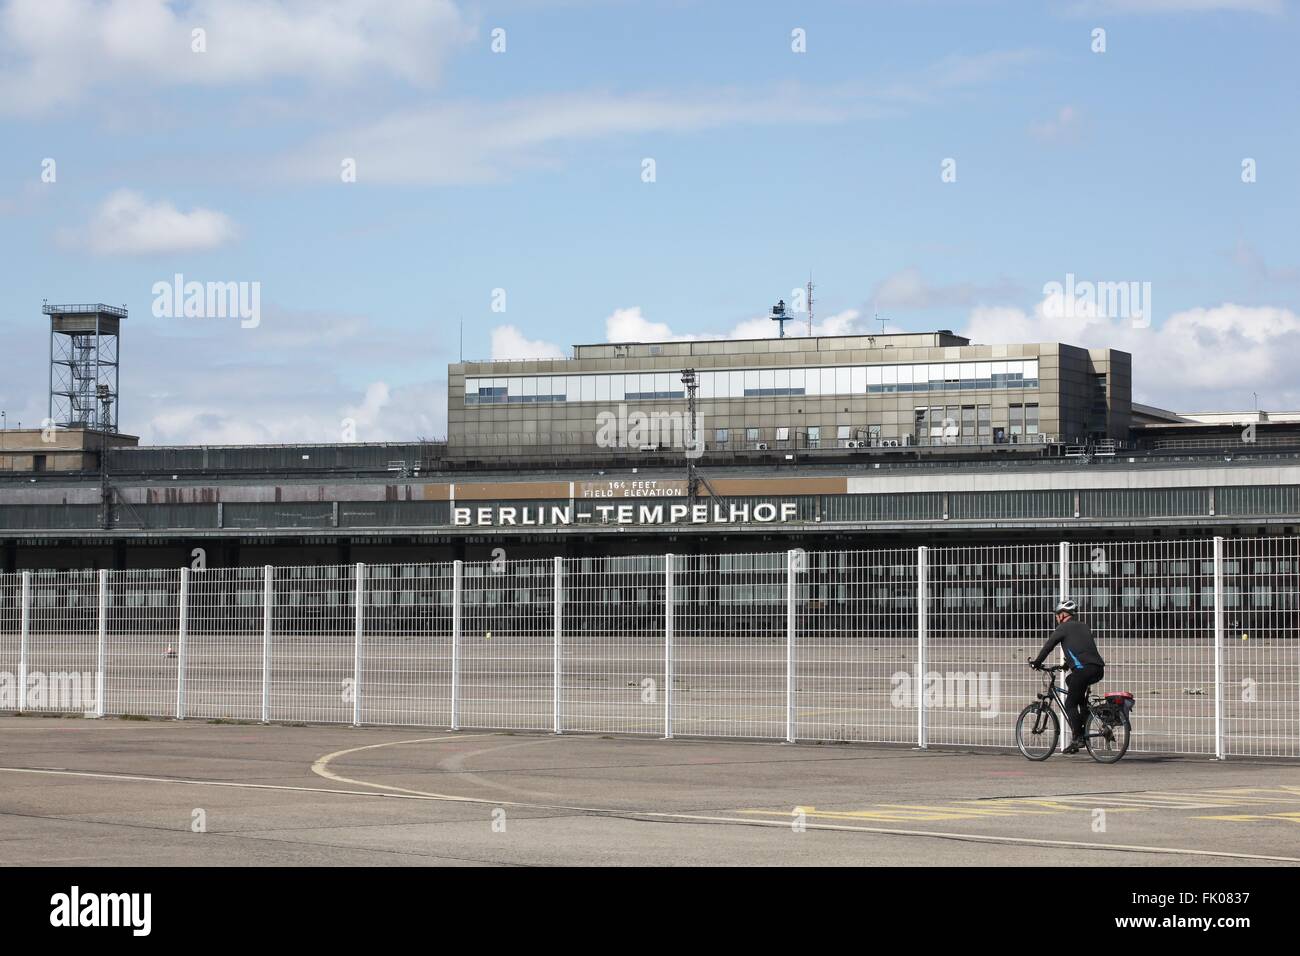 El aeropuerto de Tempelhof Berlín en Alemania Foto de stock